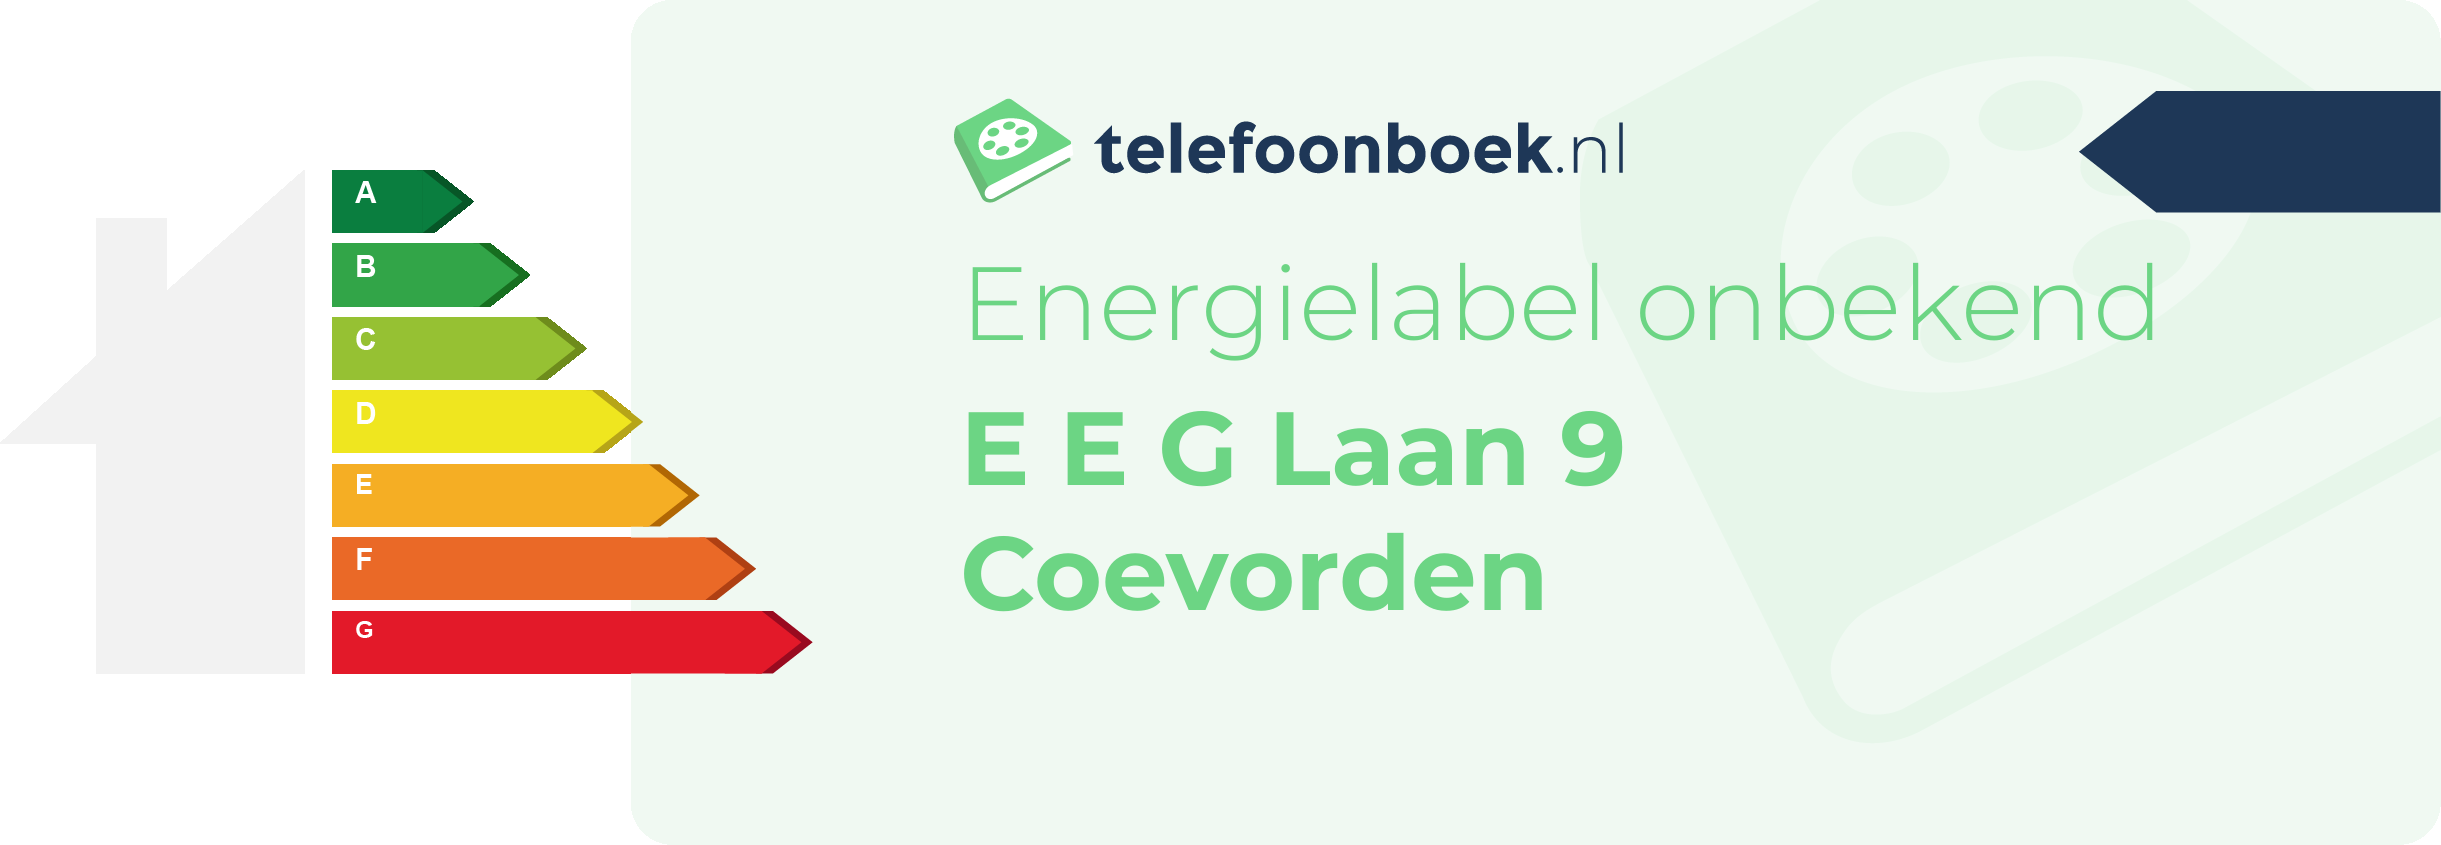 Energielabel E E G Laan 9 Coevorden